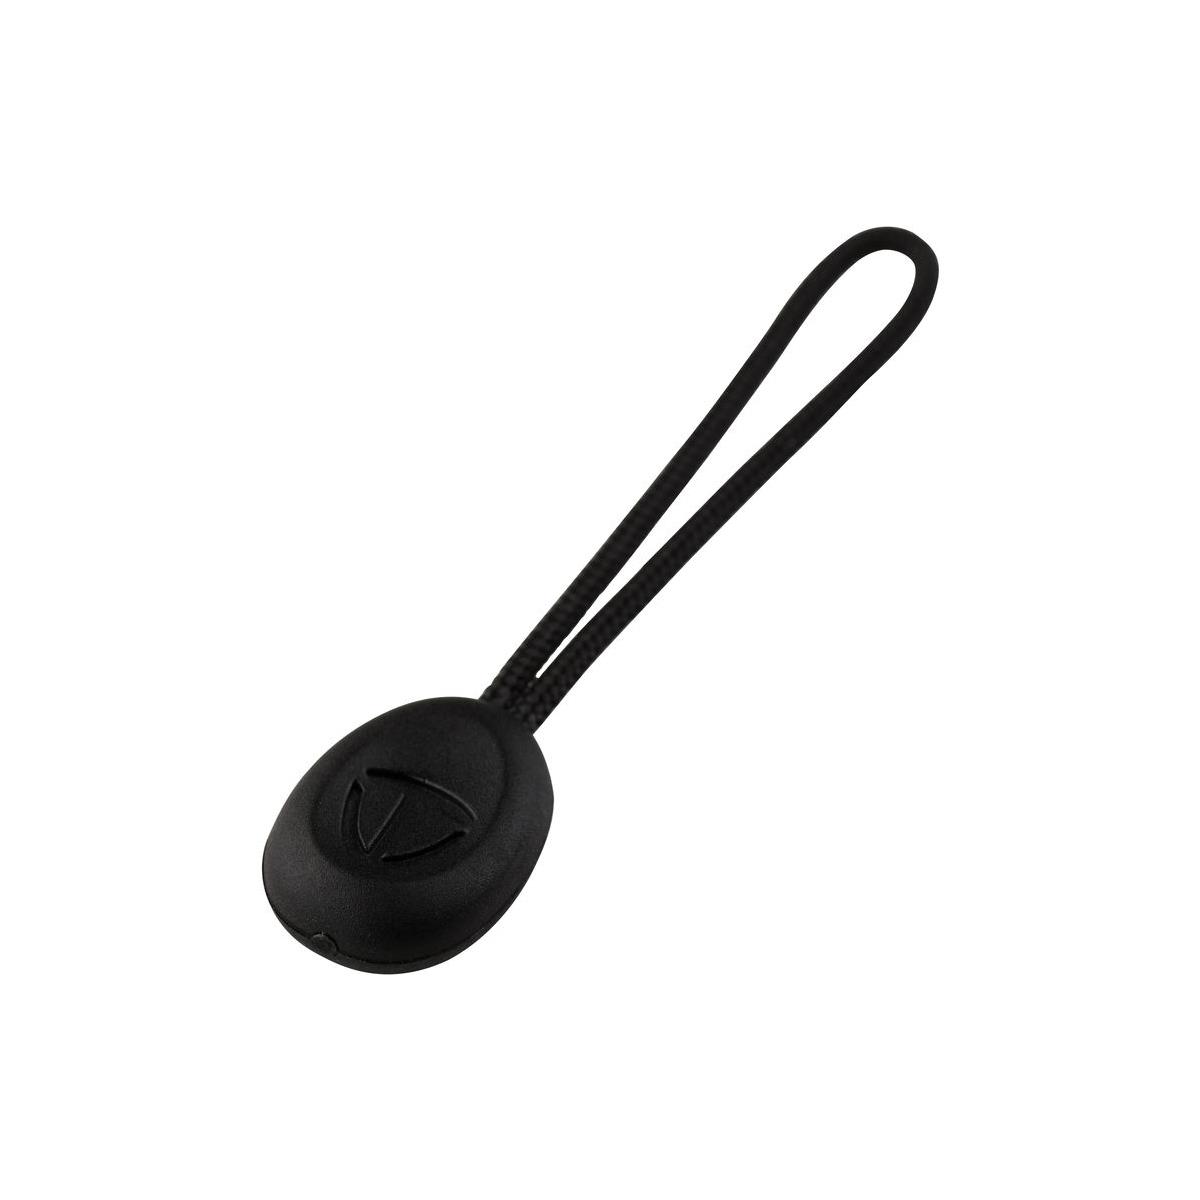 Tenba Tools Zipper Pulls Black (10)